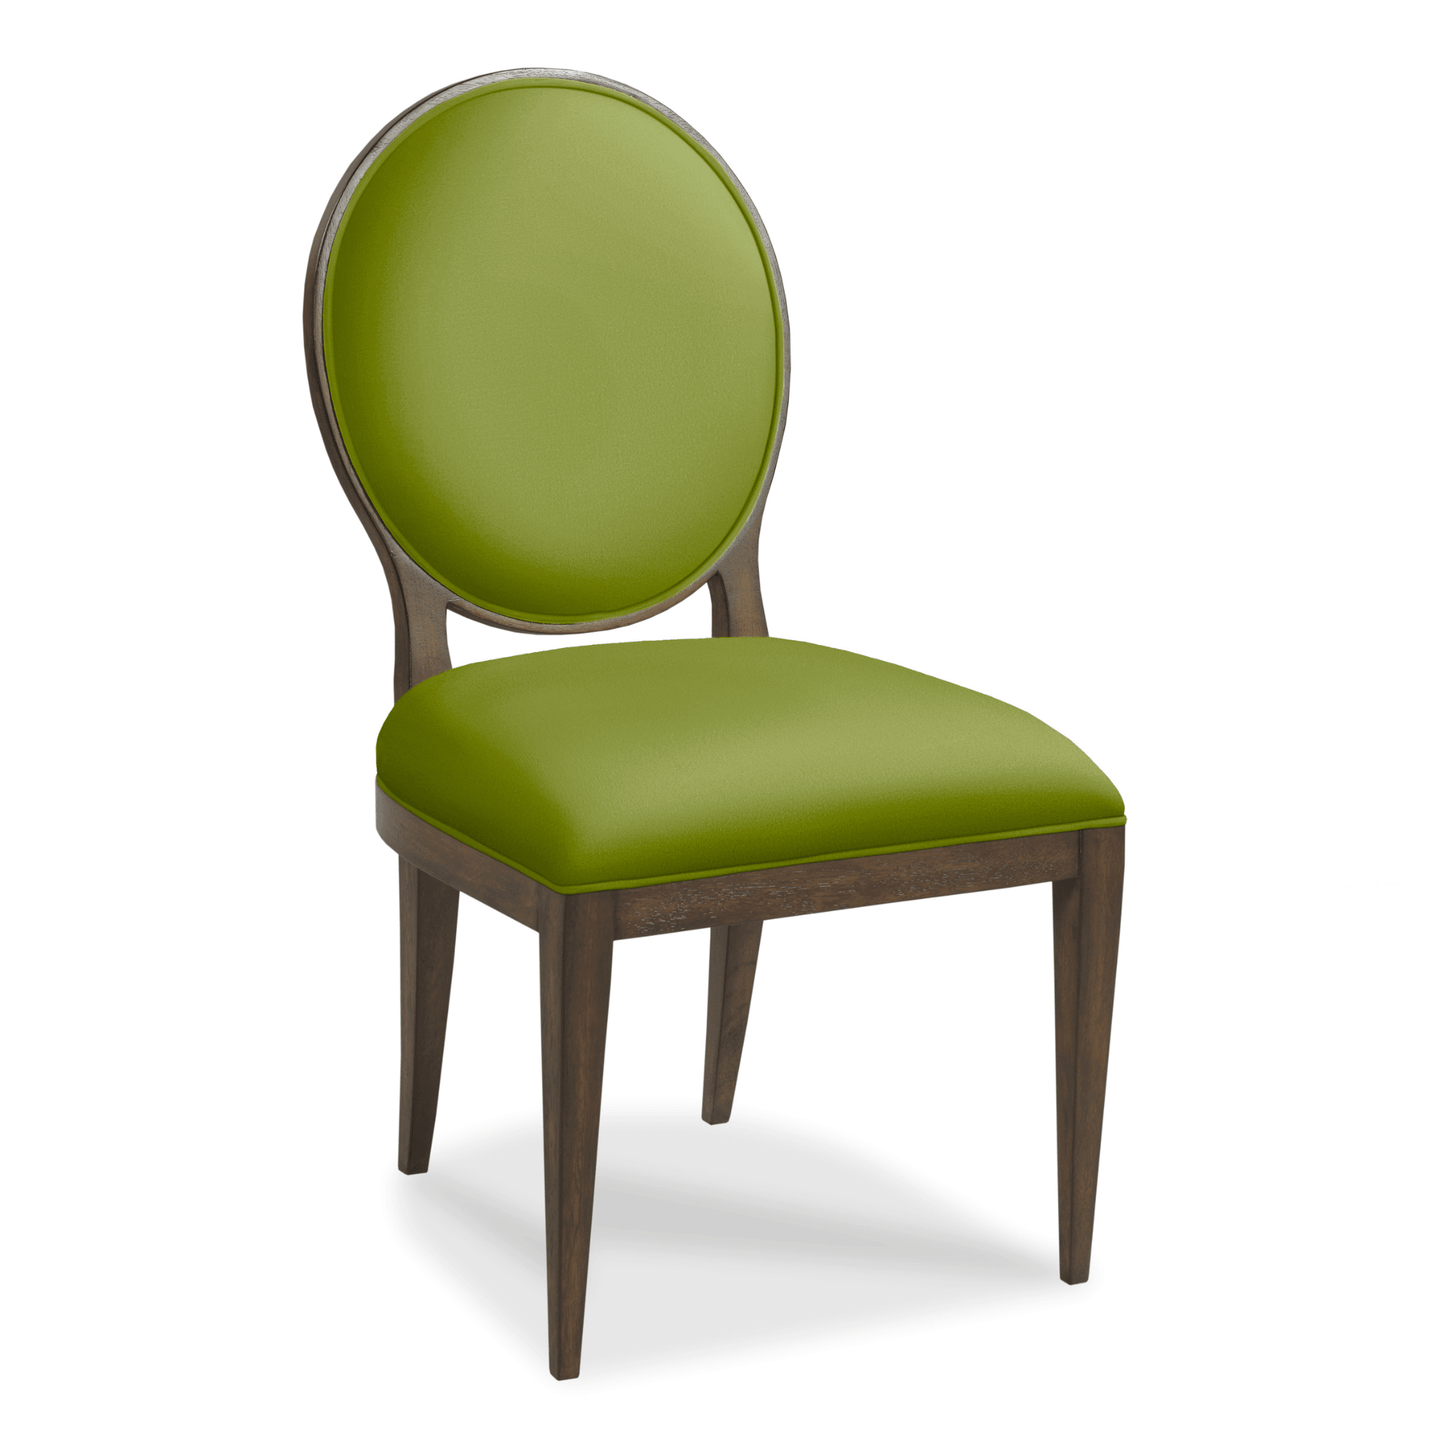 Ovale Side Chair - Fairley Fancy 